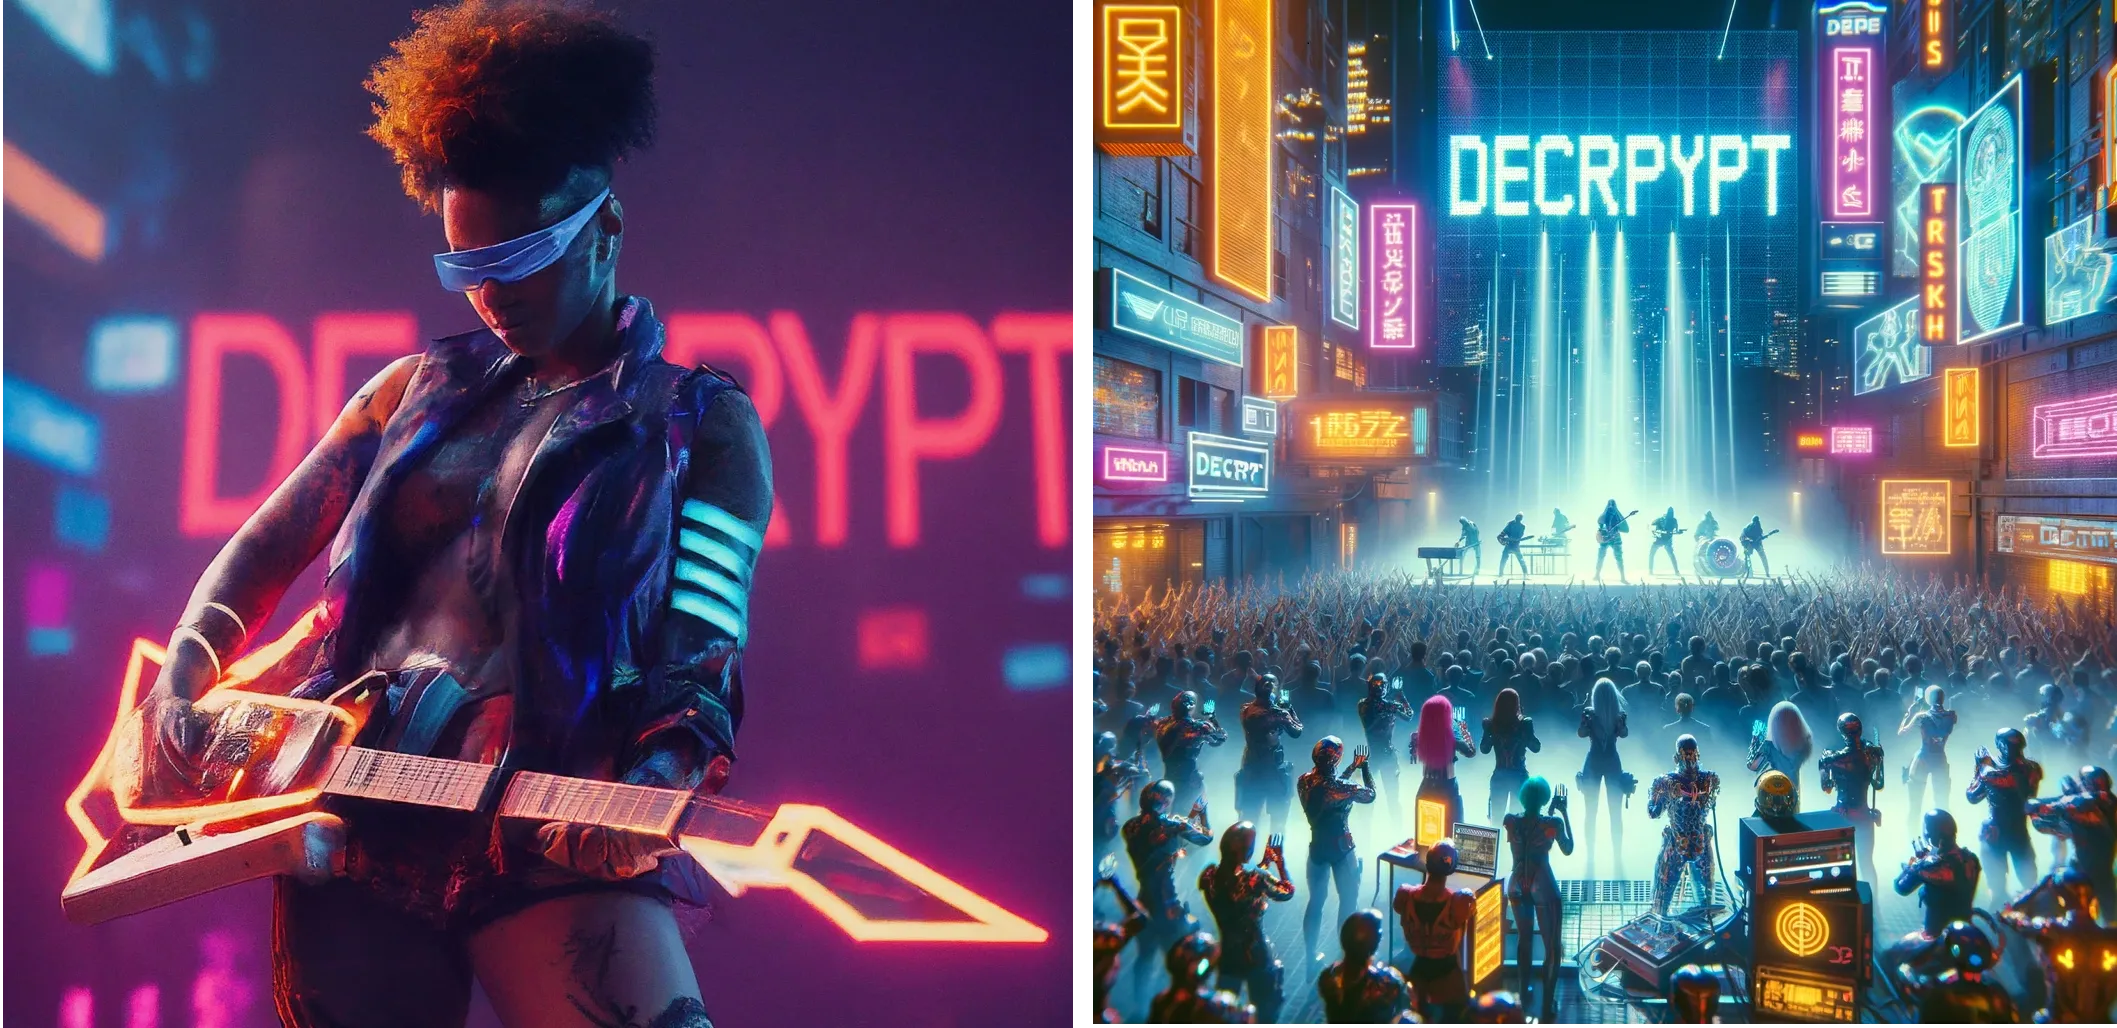 Nghệ sĩ tương lai Cyberpunk biểu diễn trên sân khấu với chữ "DECRYPT" dưới ánh đèn neon ở hậu cảnh. Gemini (trái) vs ChatGPT Plus (phải)